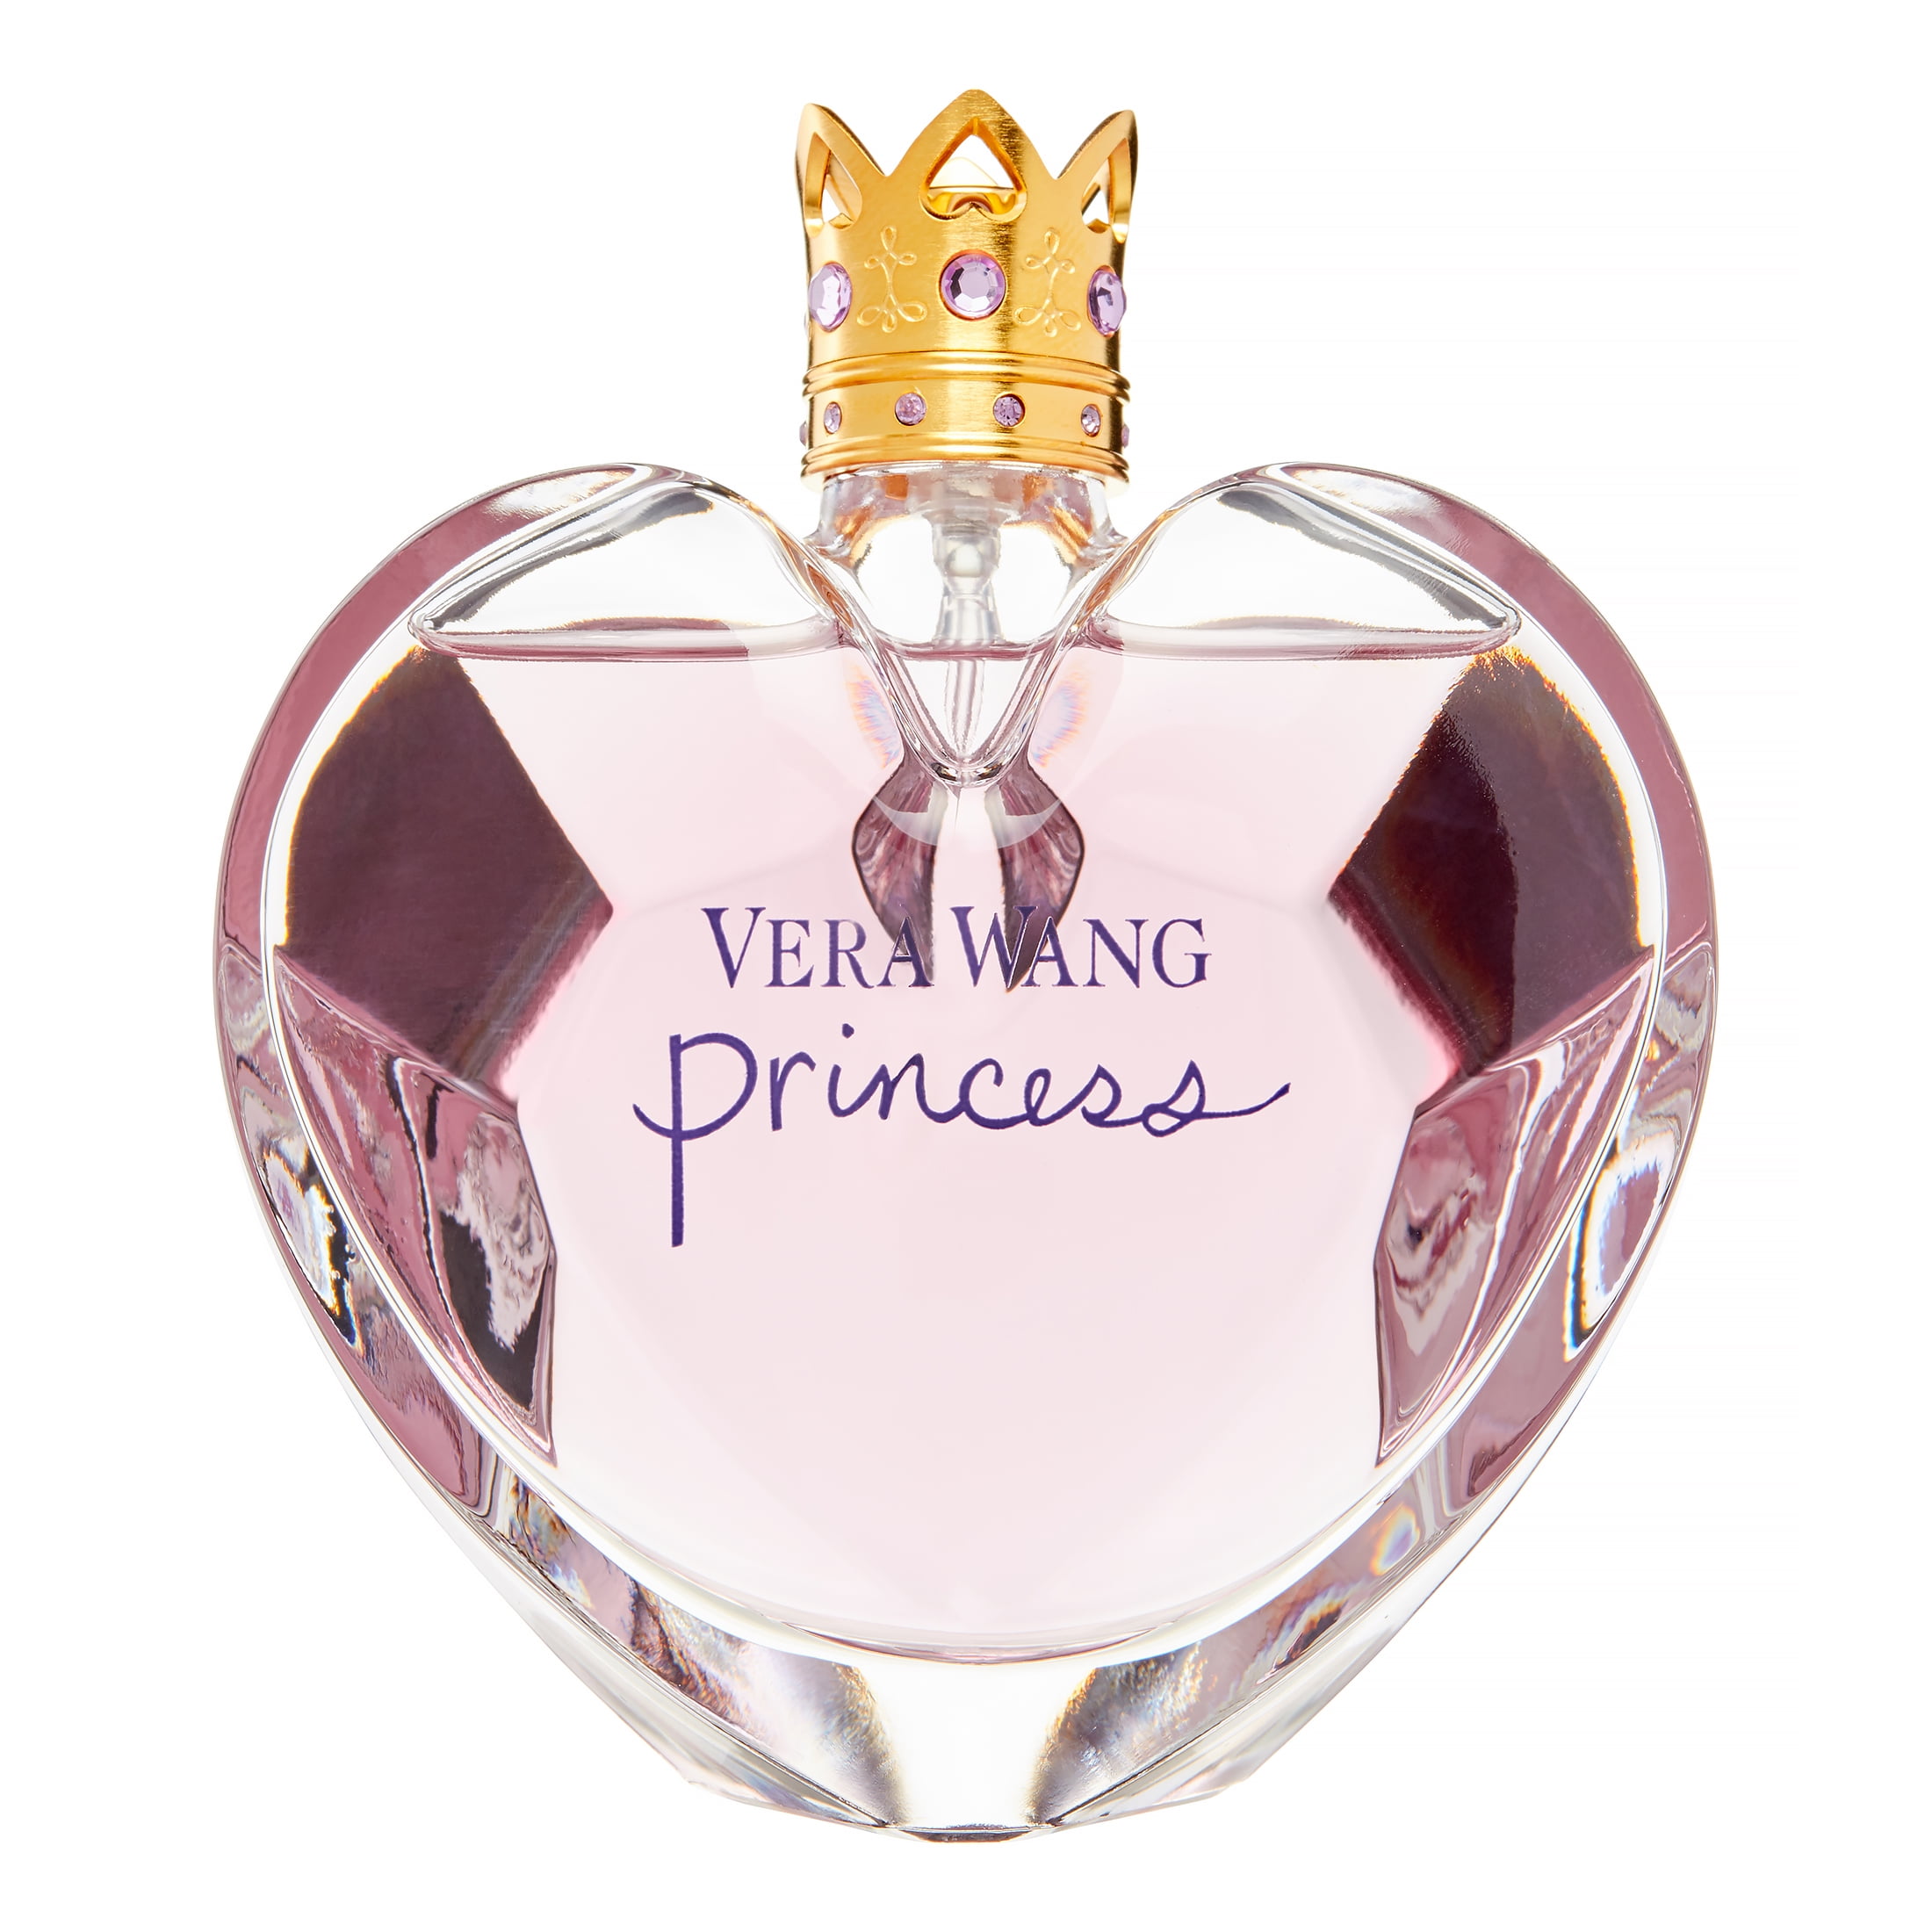 Vera Wang Perfume By Vera Wang for Women